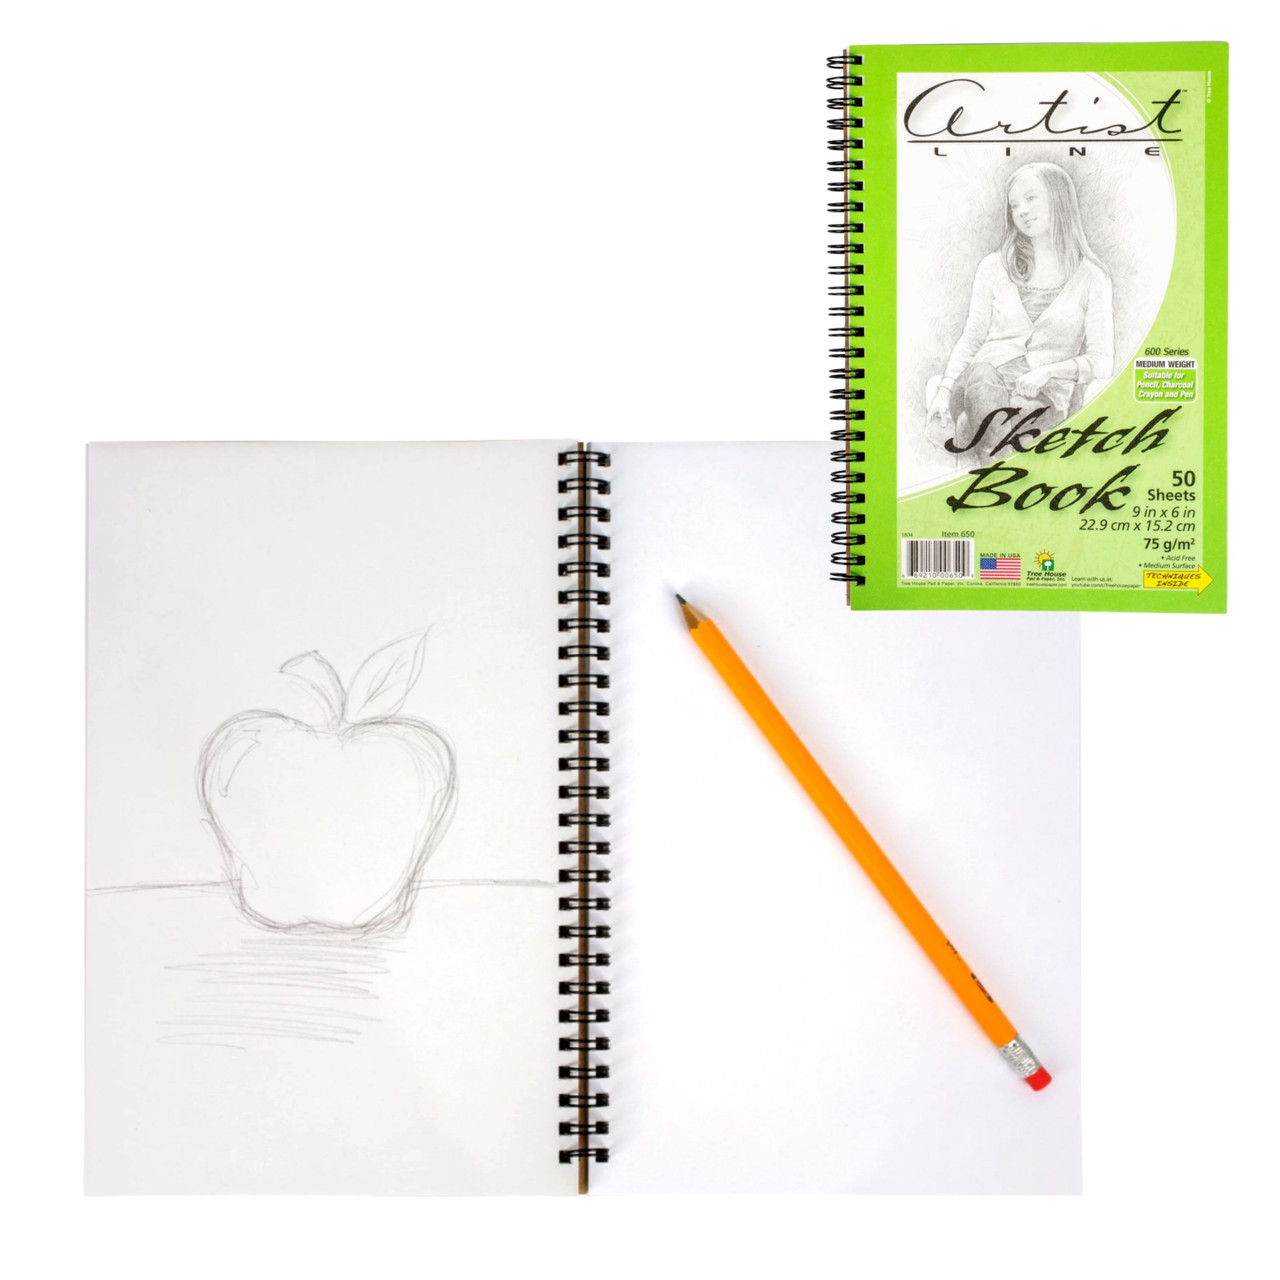 BAZIC 30 Ct. 8.5 X 11 Side Bound Spiral Premium Sketch Book Bazic Products